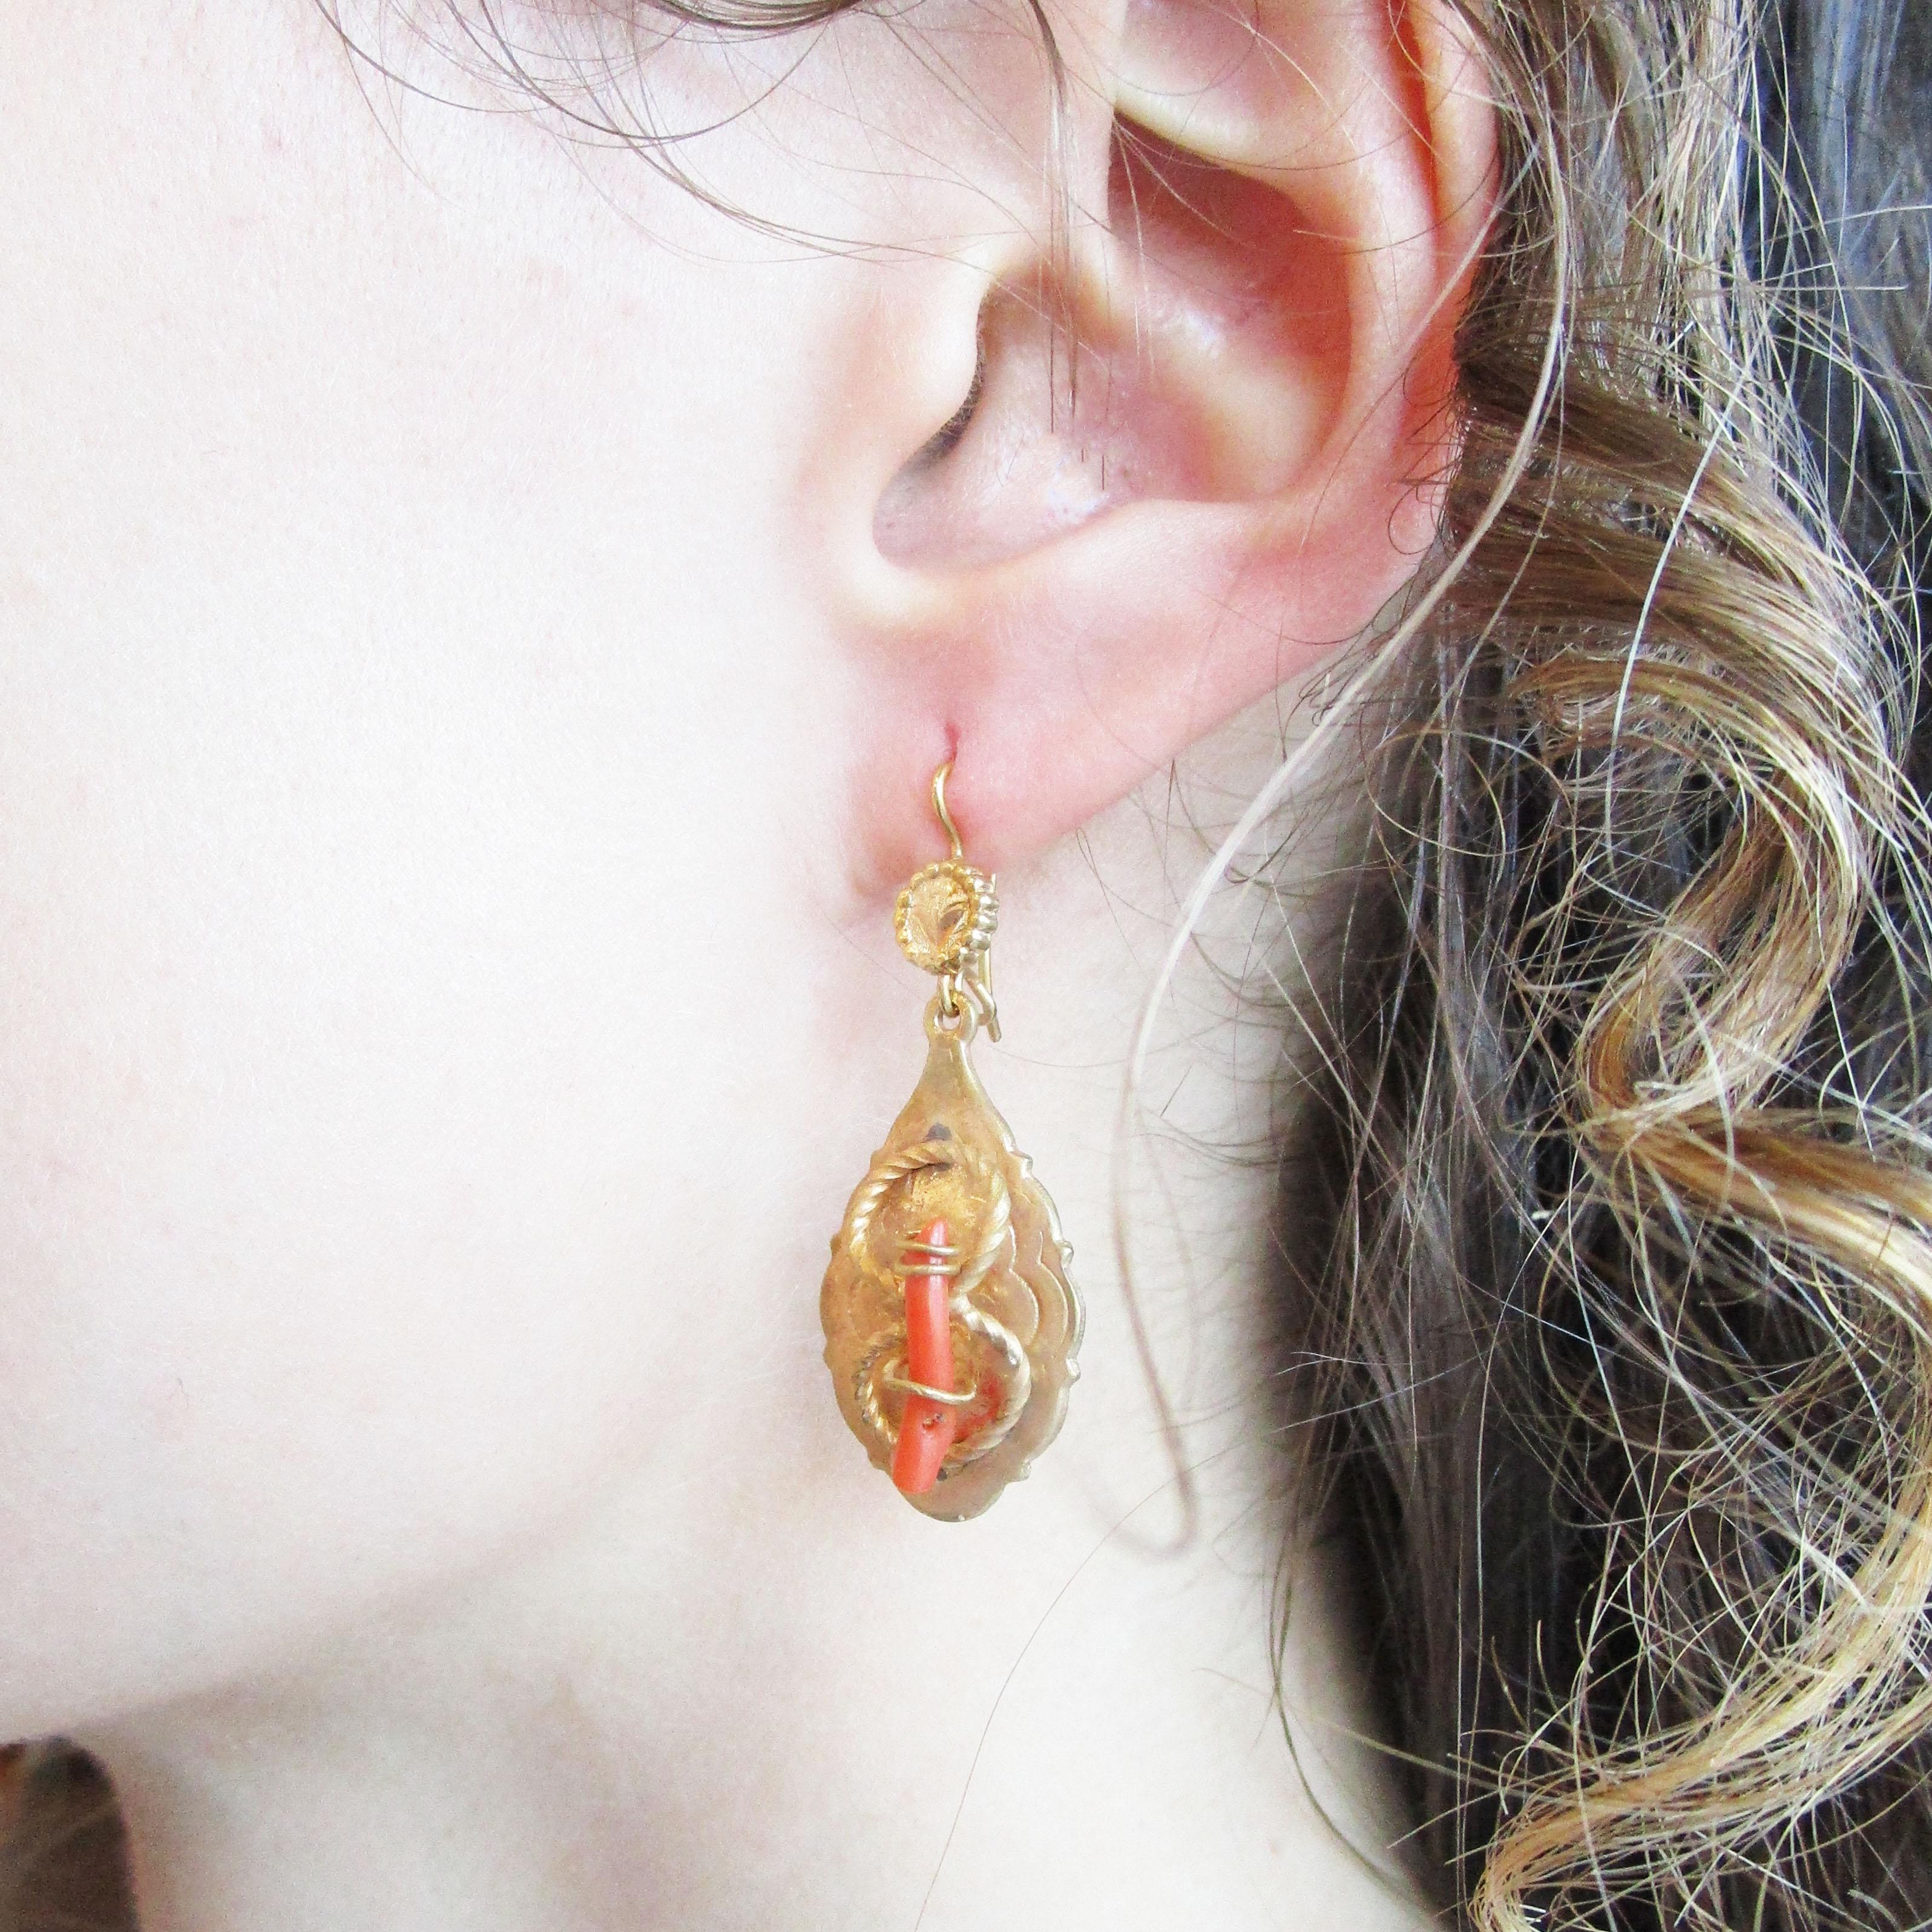 Il s'agit d'une superbe paire de boucles d'oreilles pendantes de style victorien datant de 1890 et présentant une magnifique combinaison de détails en fil métallique torsadé rempli d'or et un centre en branche de corail rouge non teinté. Les